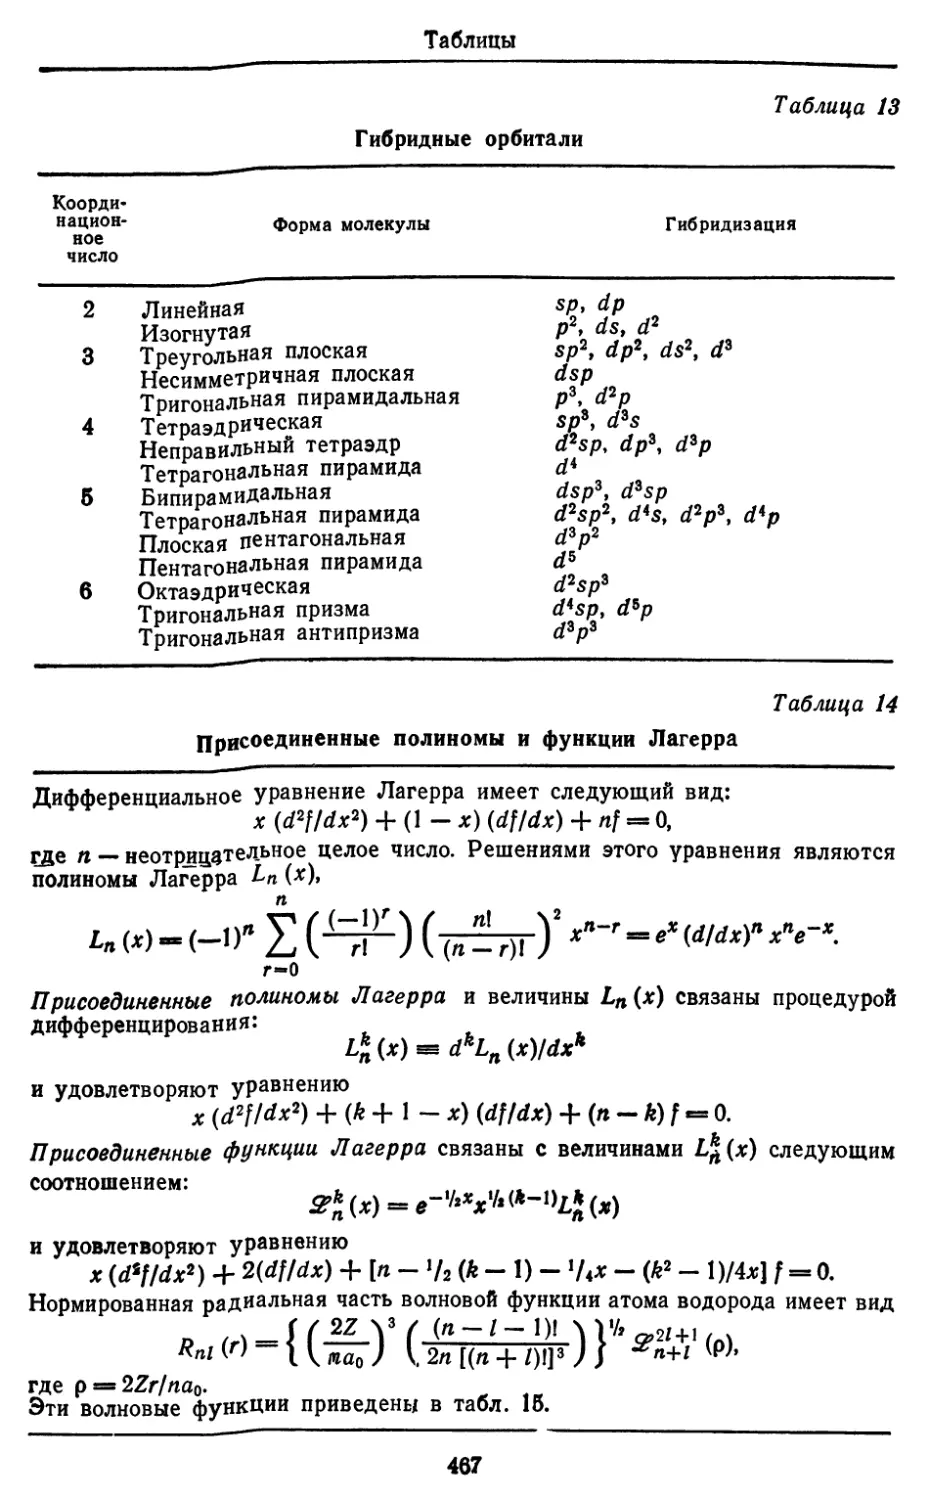 Гибридные орбитали
Присоединённые полиномы и функции Лагерра